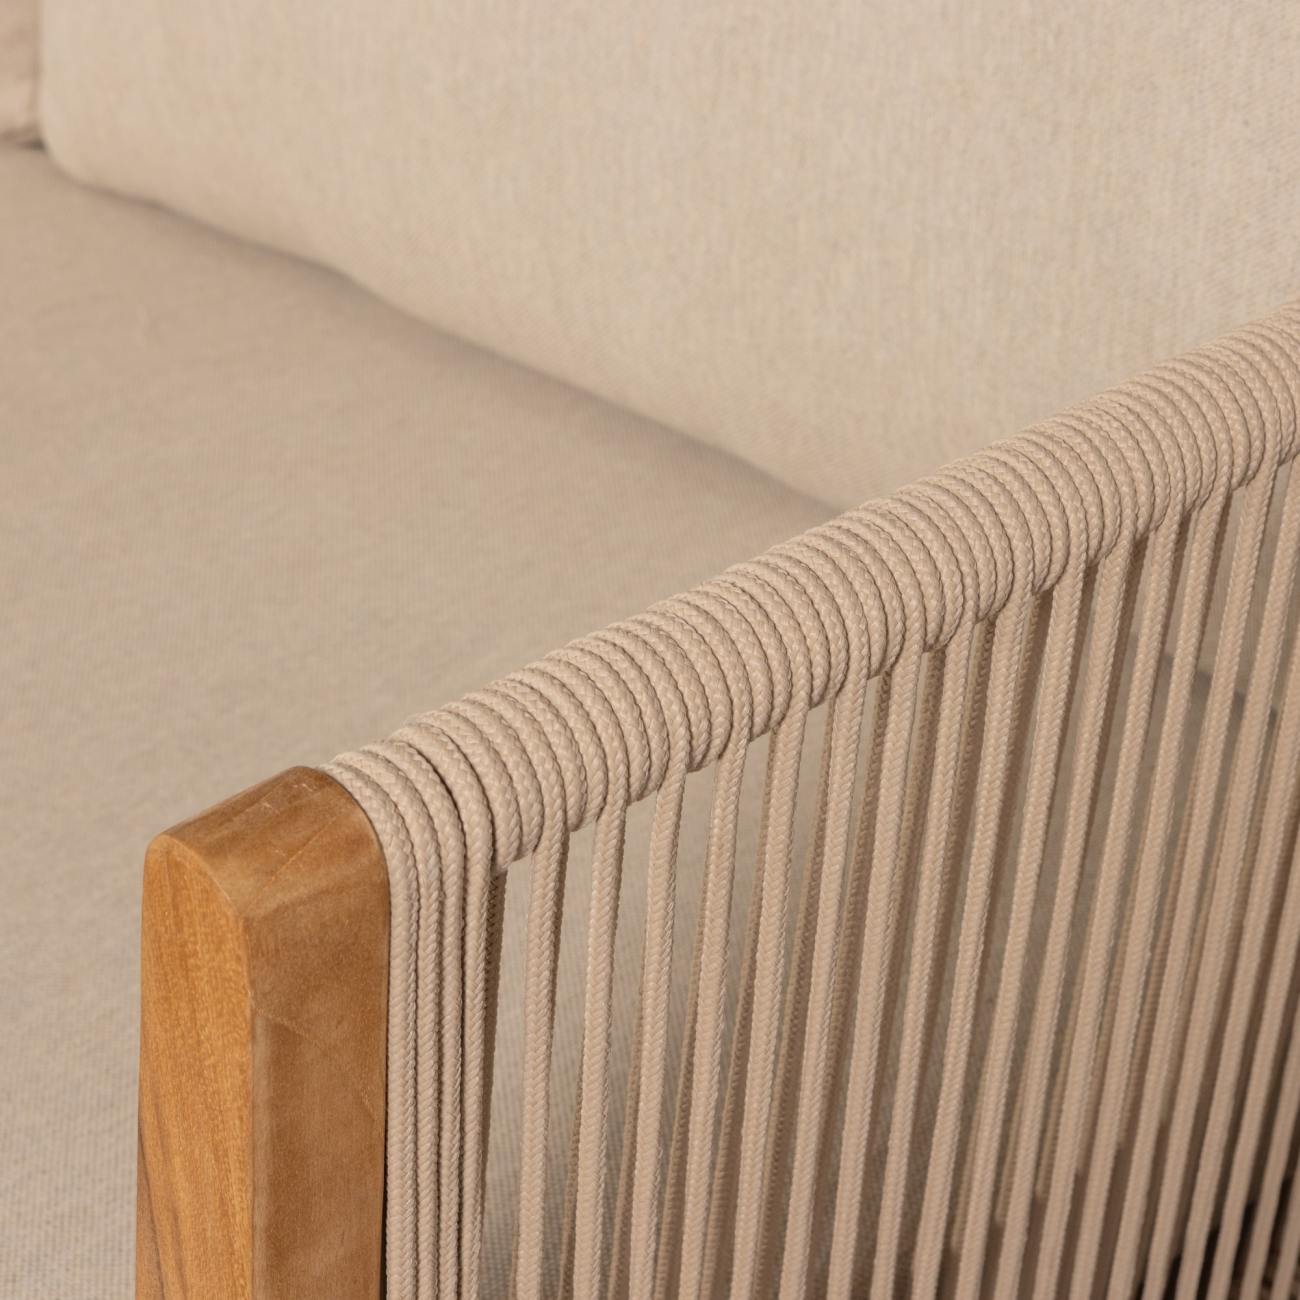 Das Gartensofa San Remo überzeugt mit seinem modernen Design. Gefertigt wurde es aus Stoff, welcher einen Sand Farbton besitzt. Das Gestell ist aus Teakholz und hat eine natürliche Farbe. Das Sofa besitzt eine Sitzhöhe von 41 cm.